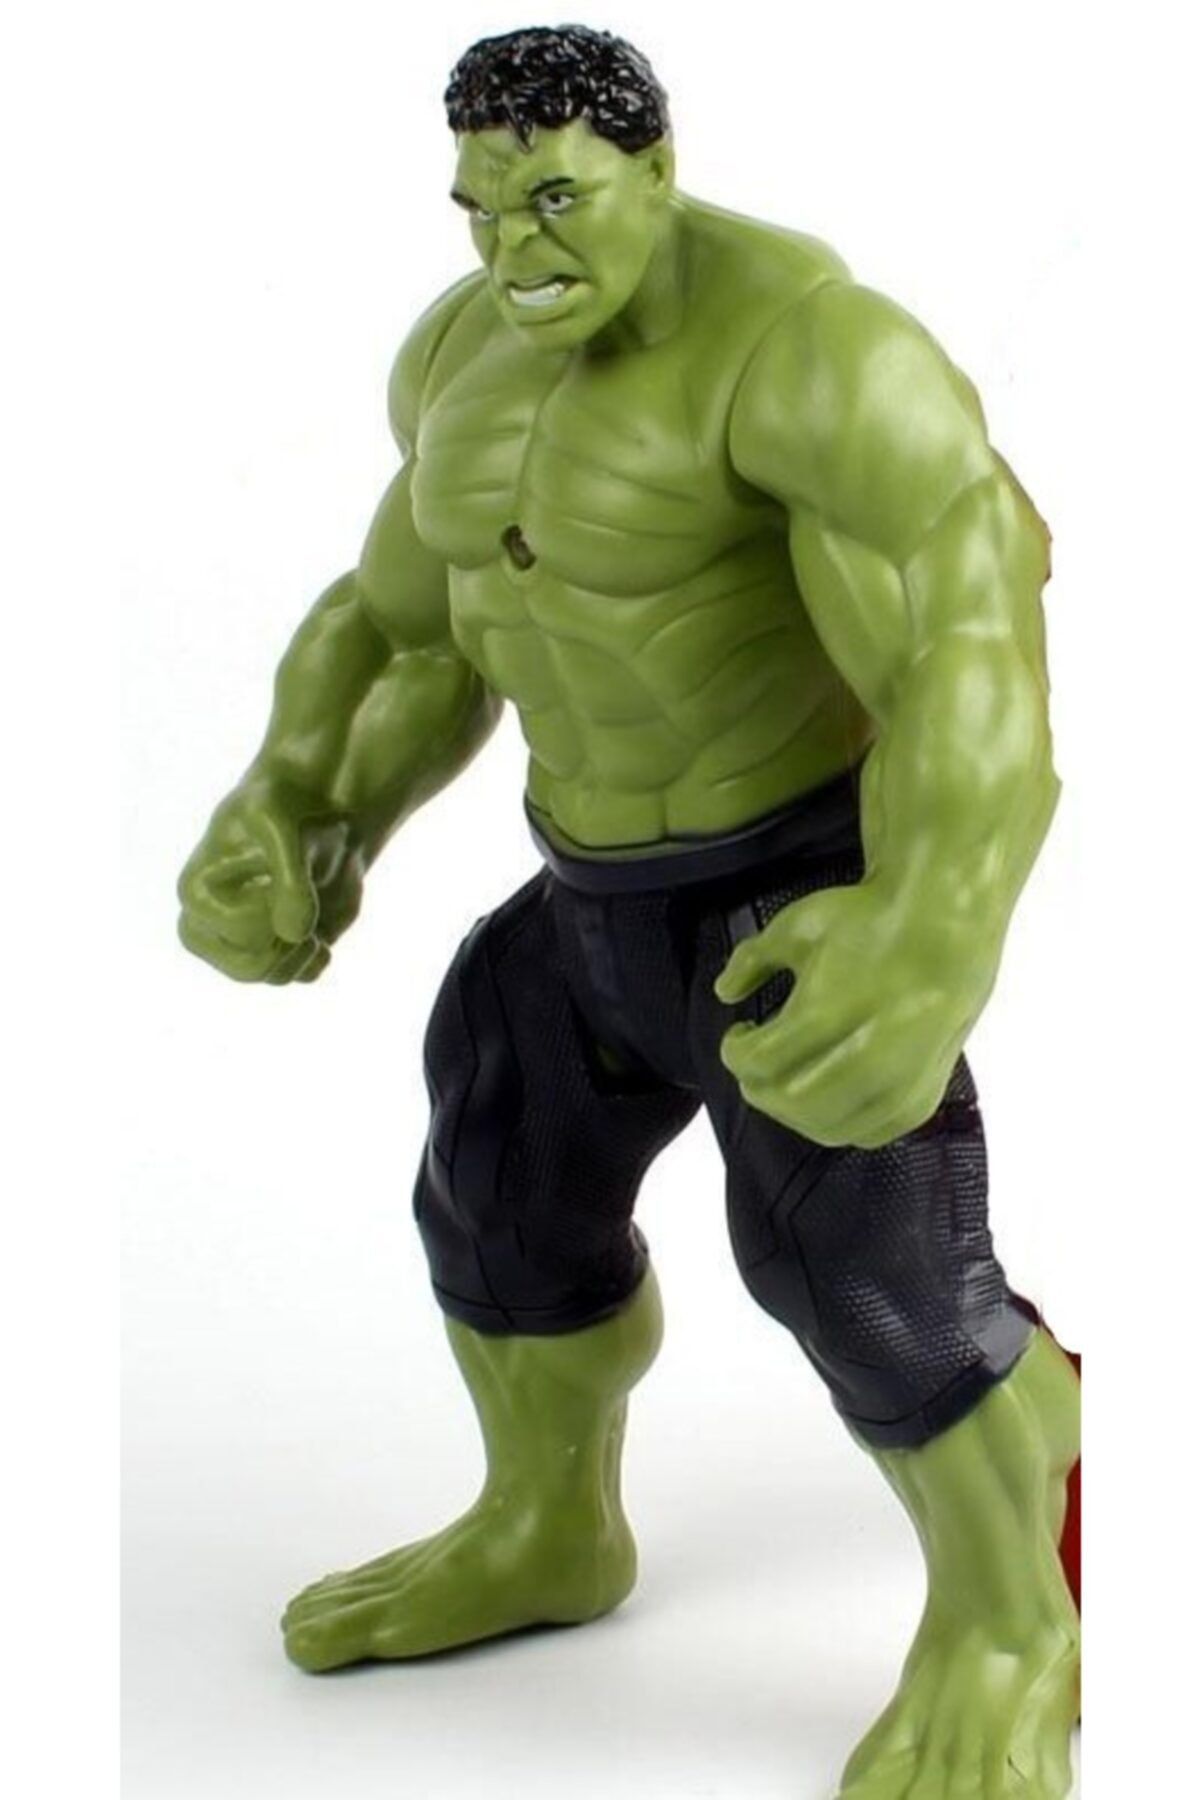 Muhtelif Büyük Boy 30 Cm Işıklı Hareketli Avengers Oyuncak Hulk Figür